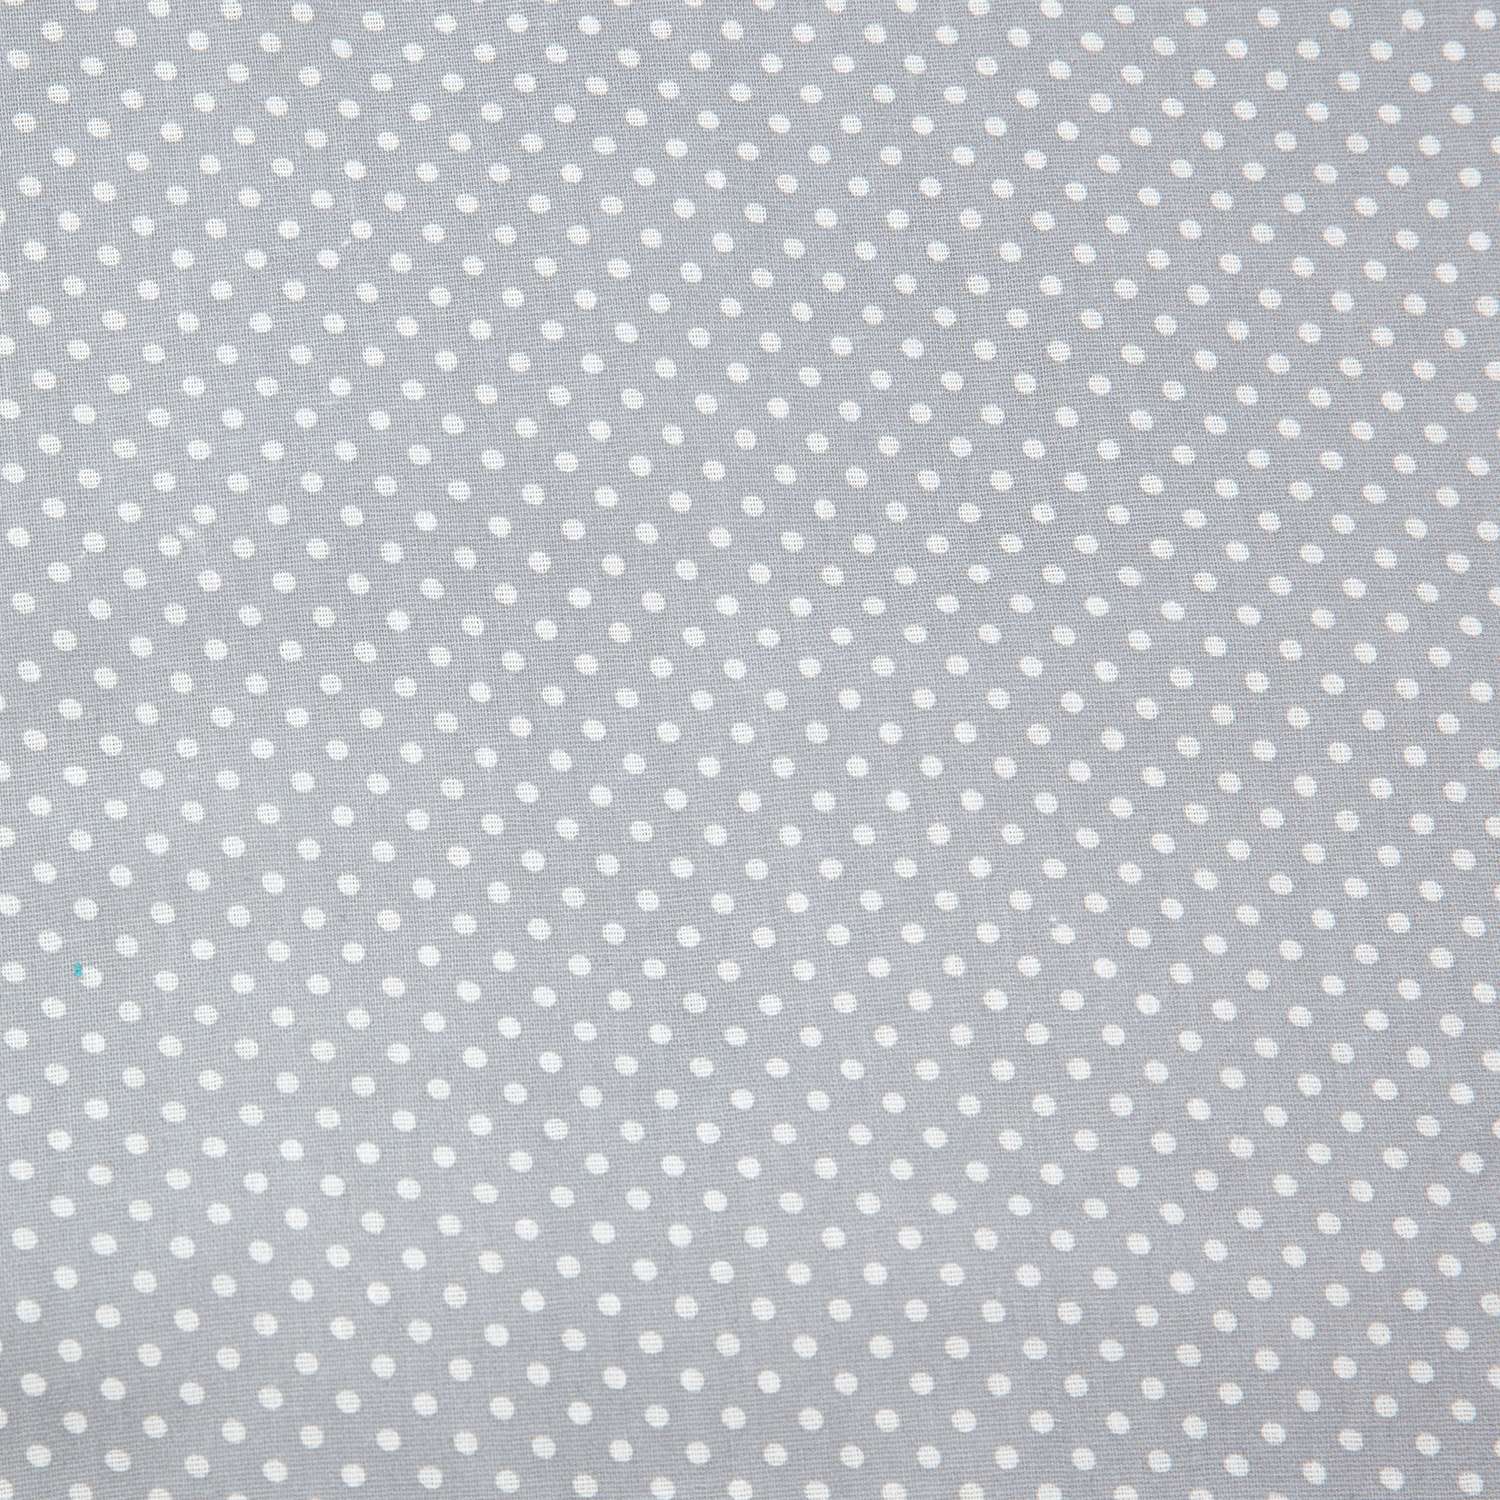 Спальный мешок Чудо-чадо Сплюшик лисички серый - фото 8